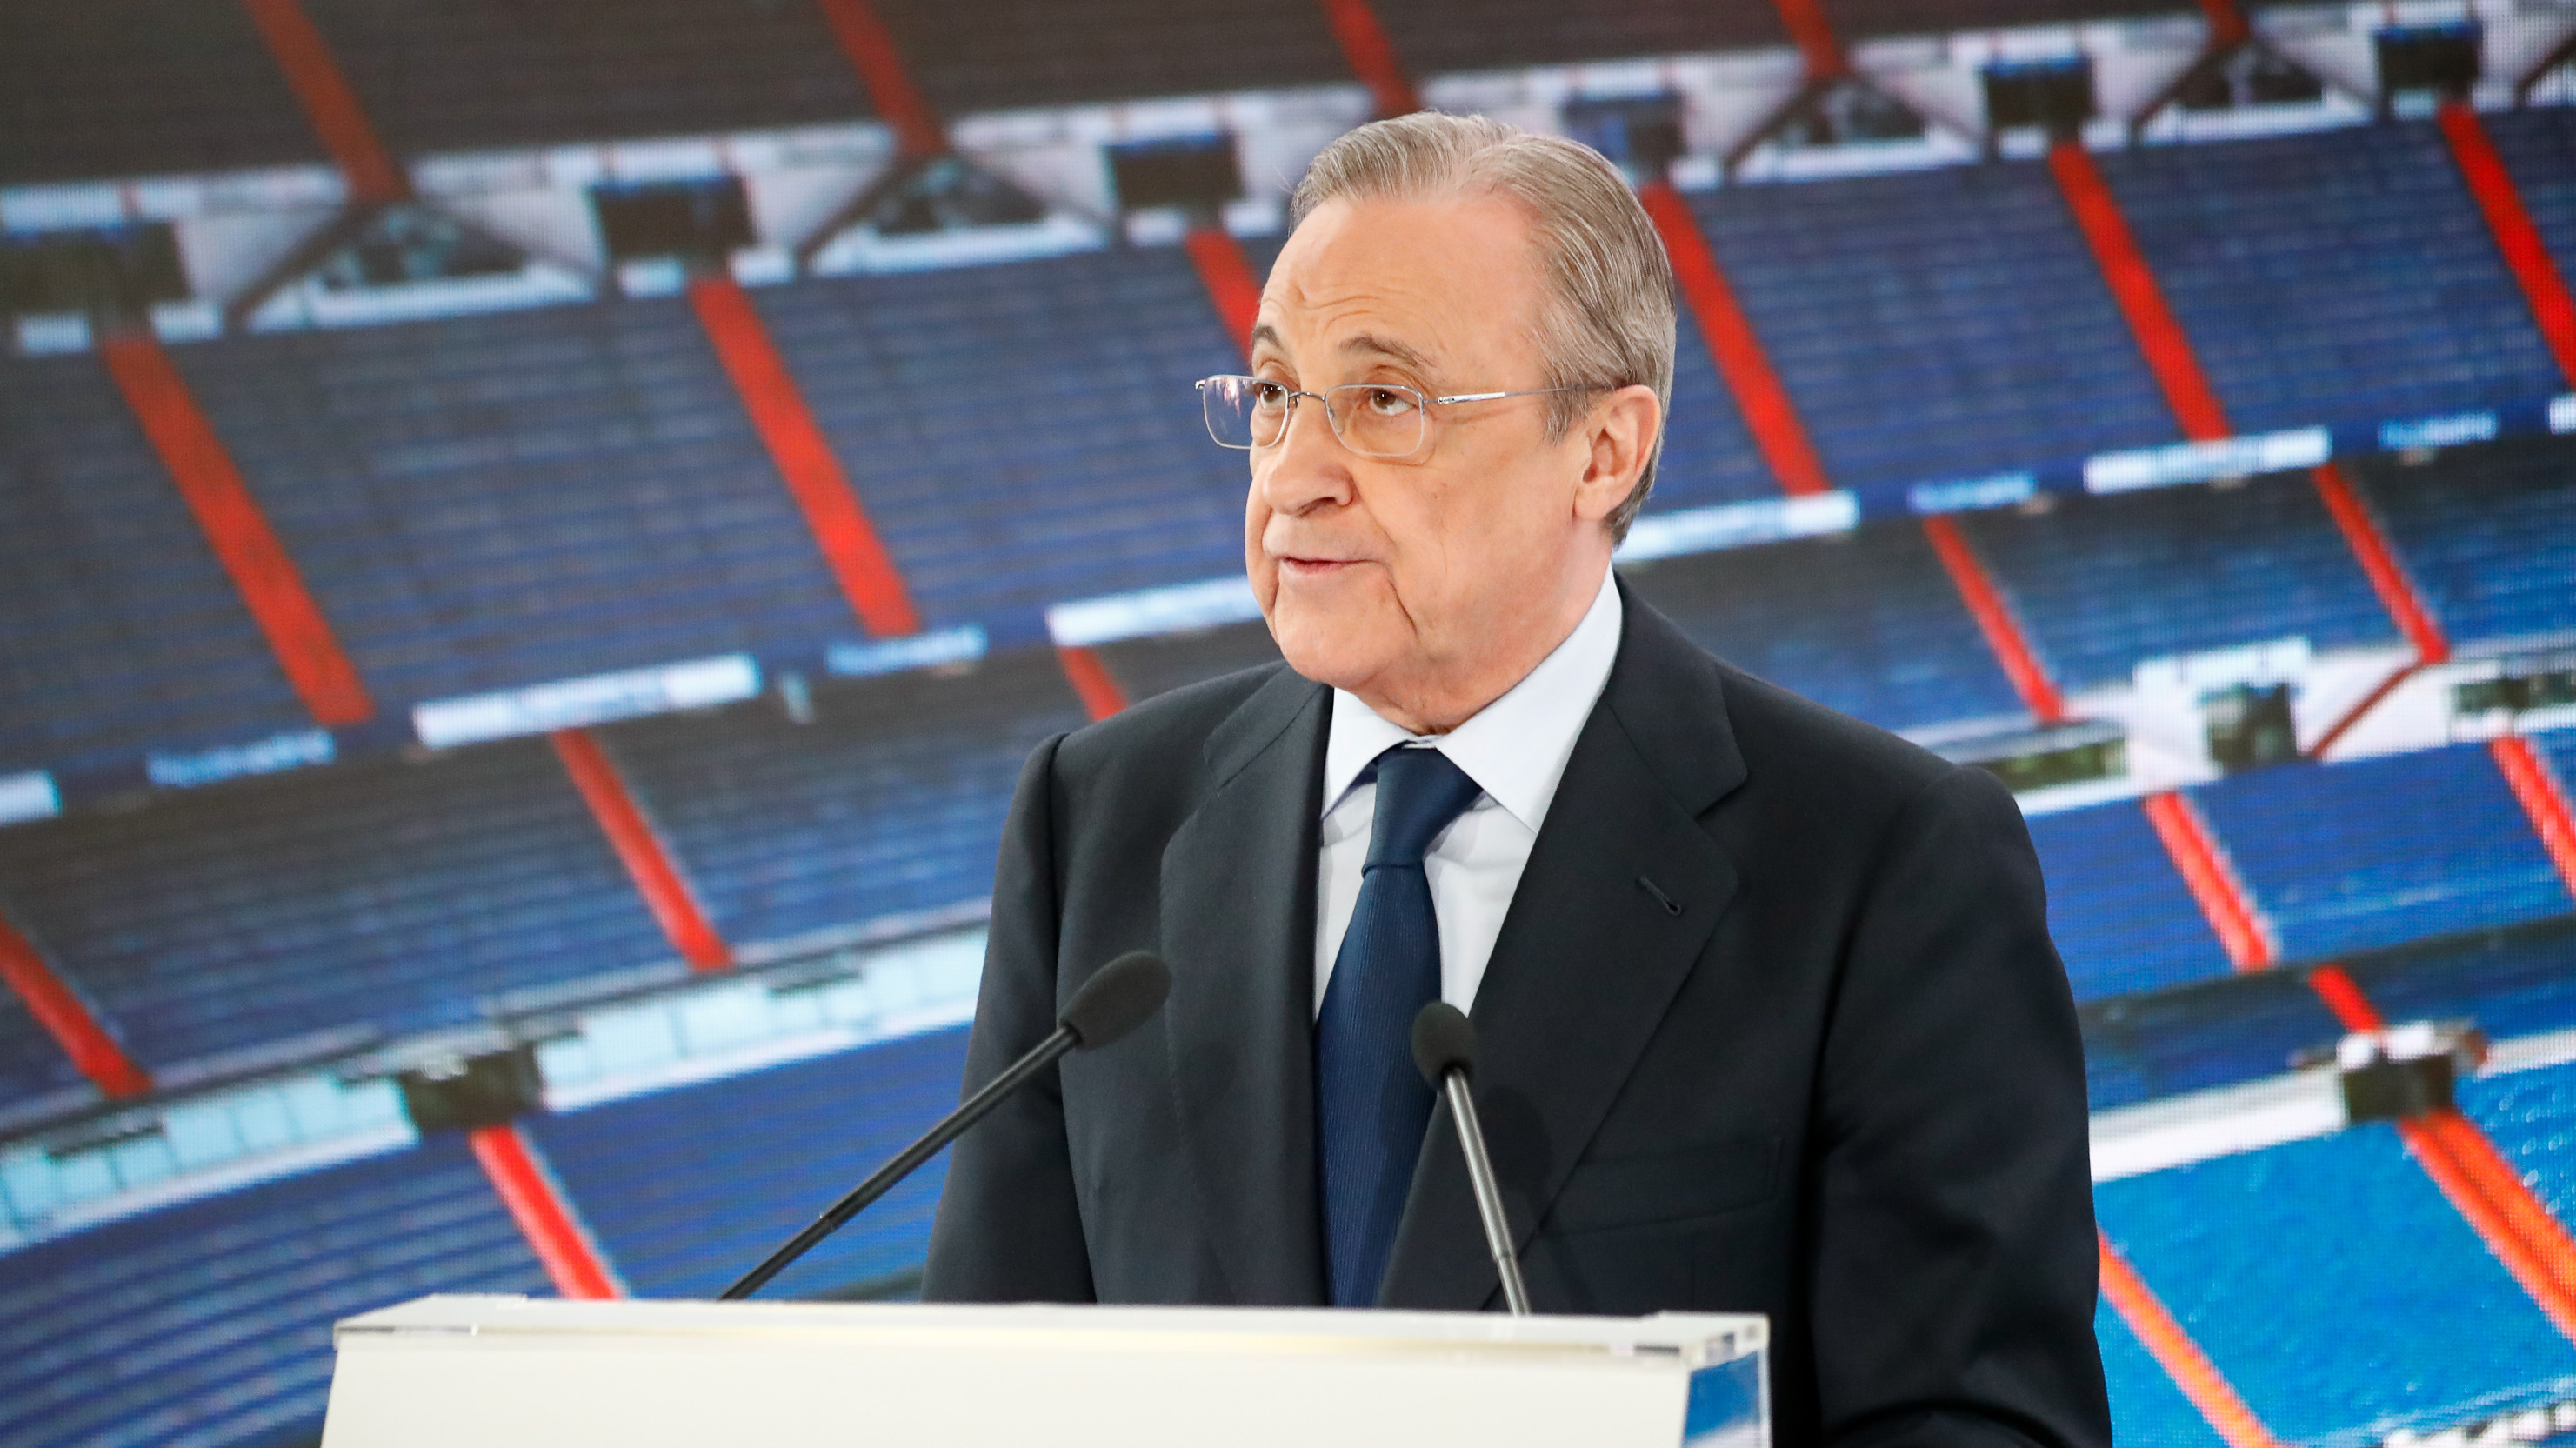 El Real Madrid salva sus pérdidas covid con créditos ICO tras omitir la reforma del Bernabéu